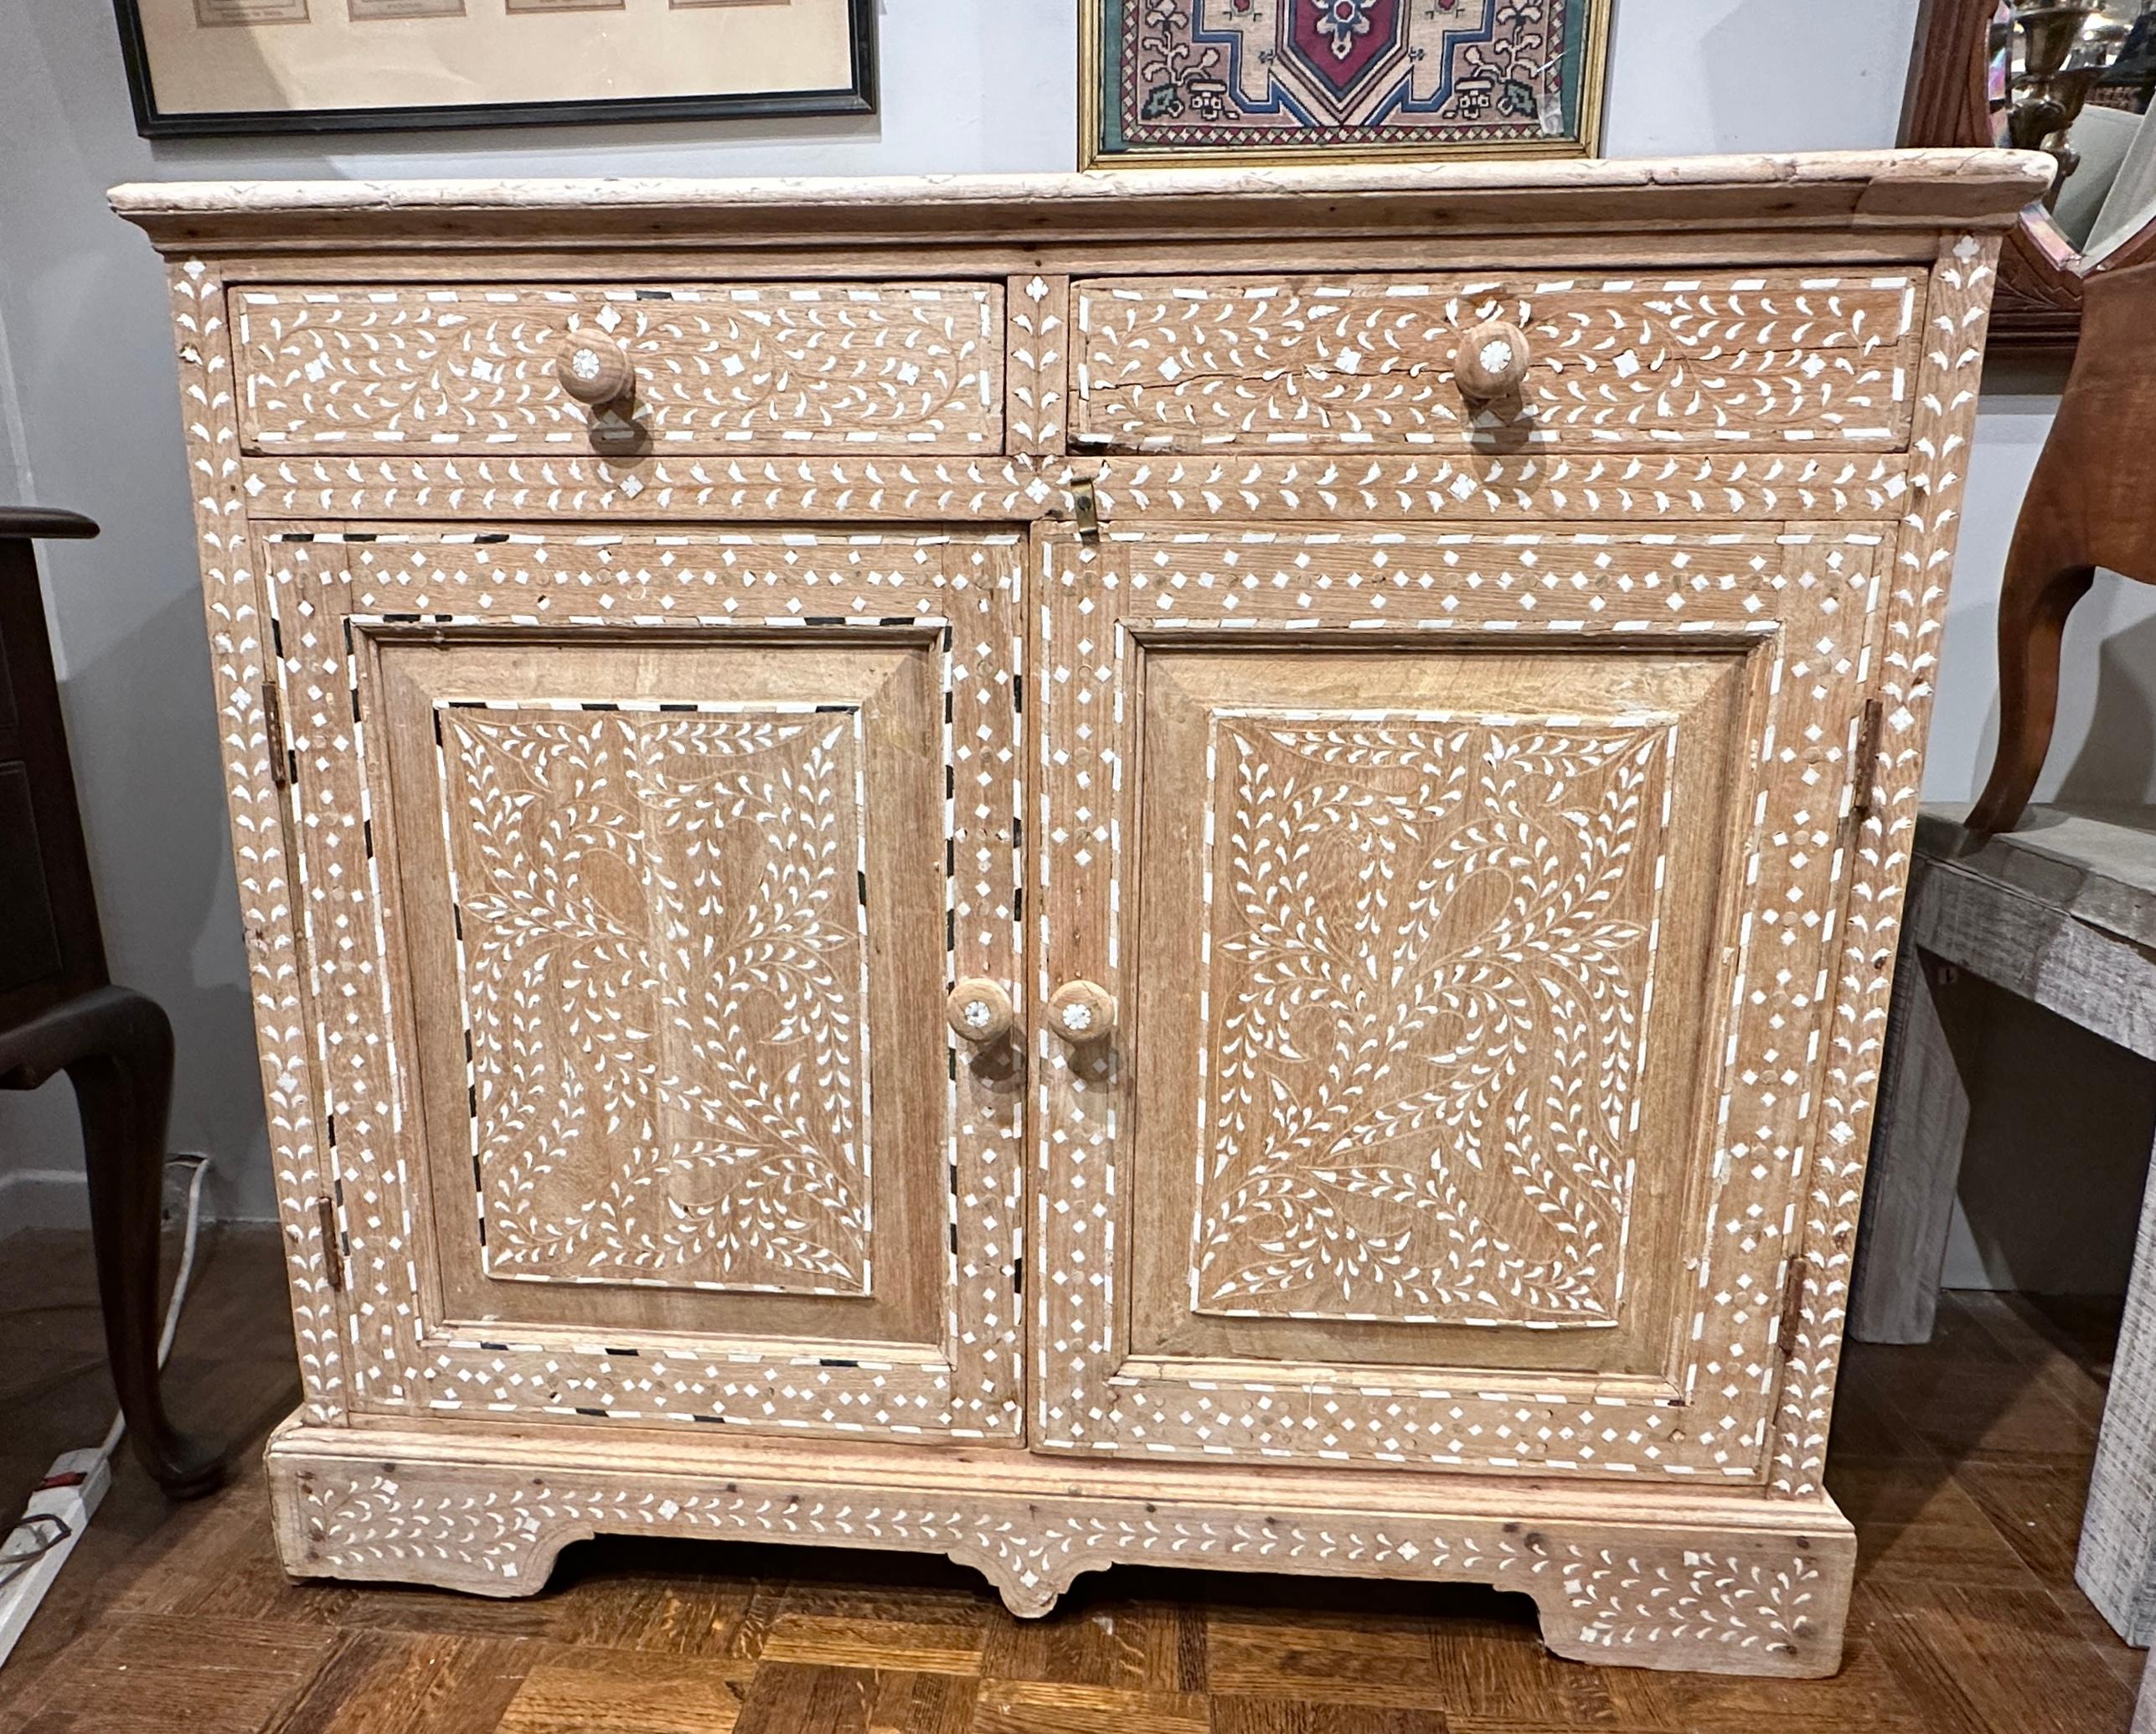 CIRCA spätes 19. Jahrhundert, Schrank mit marokkanischer Knochenintarsie, zwei Schubladen und darunter liegendem Schrank.  Es ist sehr dekorativ mit floralen Knochenintarsien gestaltet,  Das gebleichte Teakholz verleiht ihm ein sehr rustikales